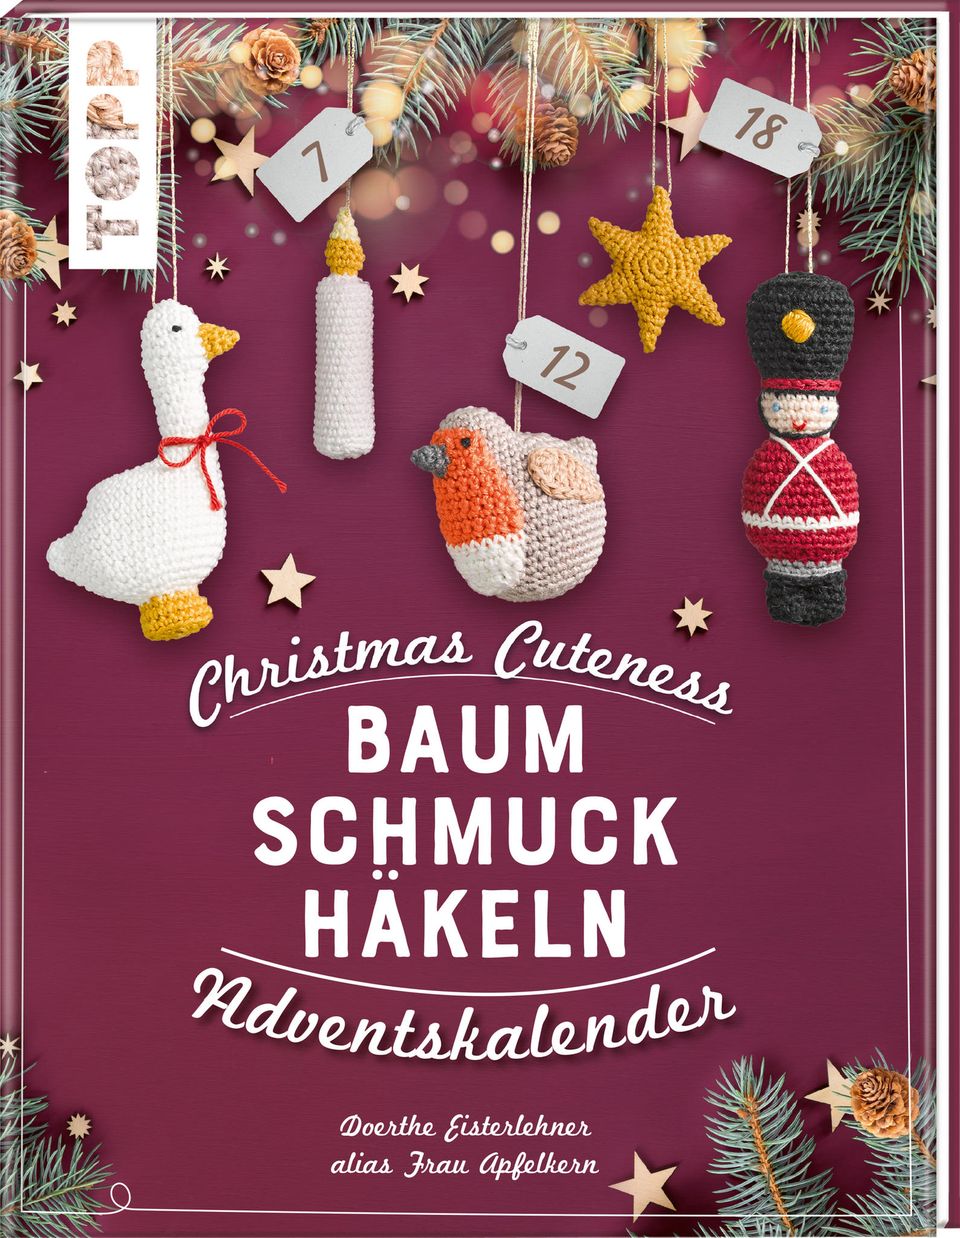 Buchcover "Baumschmuck häkeln" mit gehäkelter mit Gans, Kerze, Vogel und Zinnsoldat